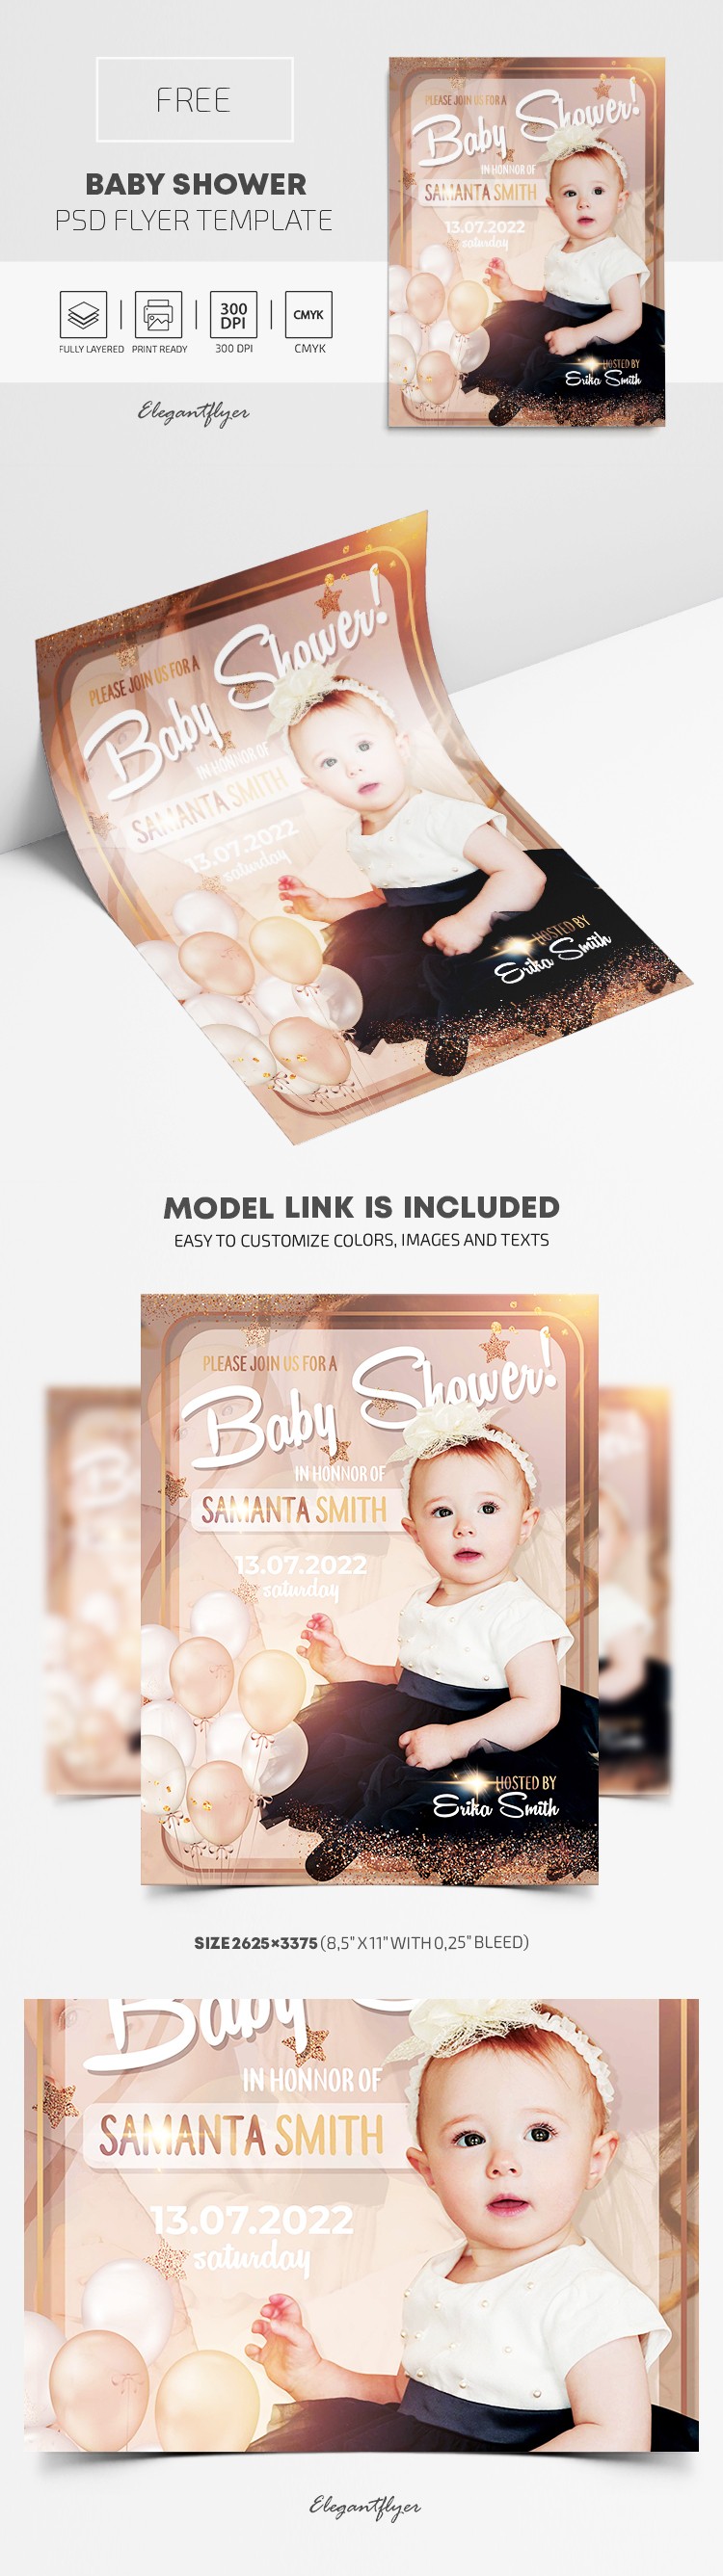 Baby Shower Flyer by ElegantFlyer